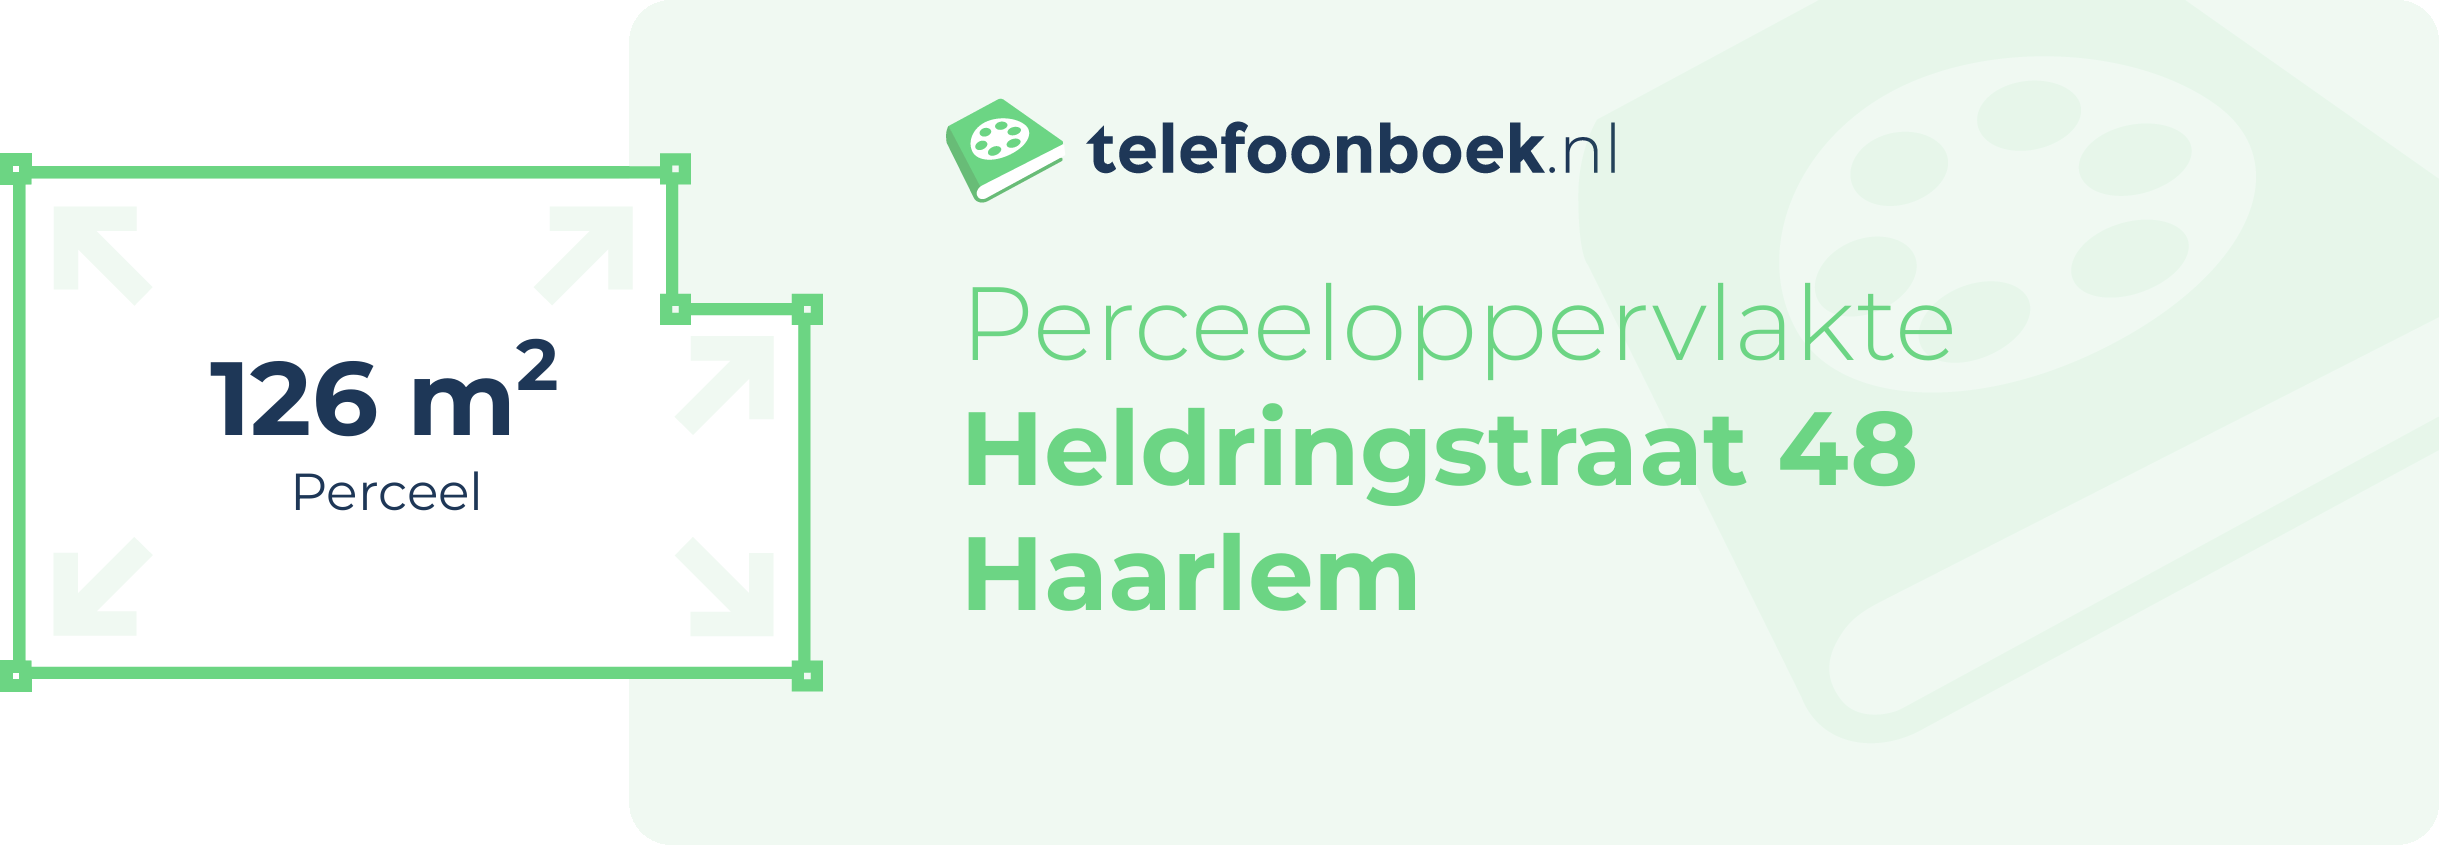 Perceeloppervlakte Heldringstraat 48 Haarlem